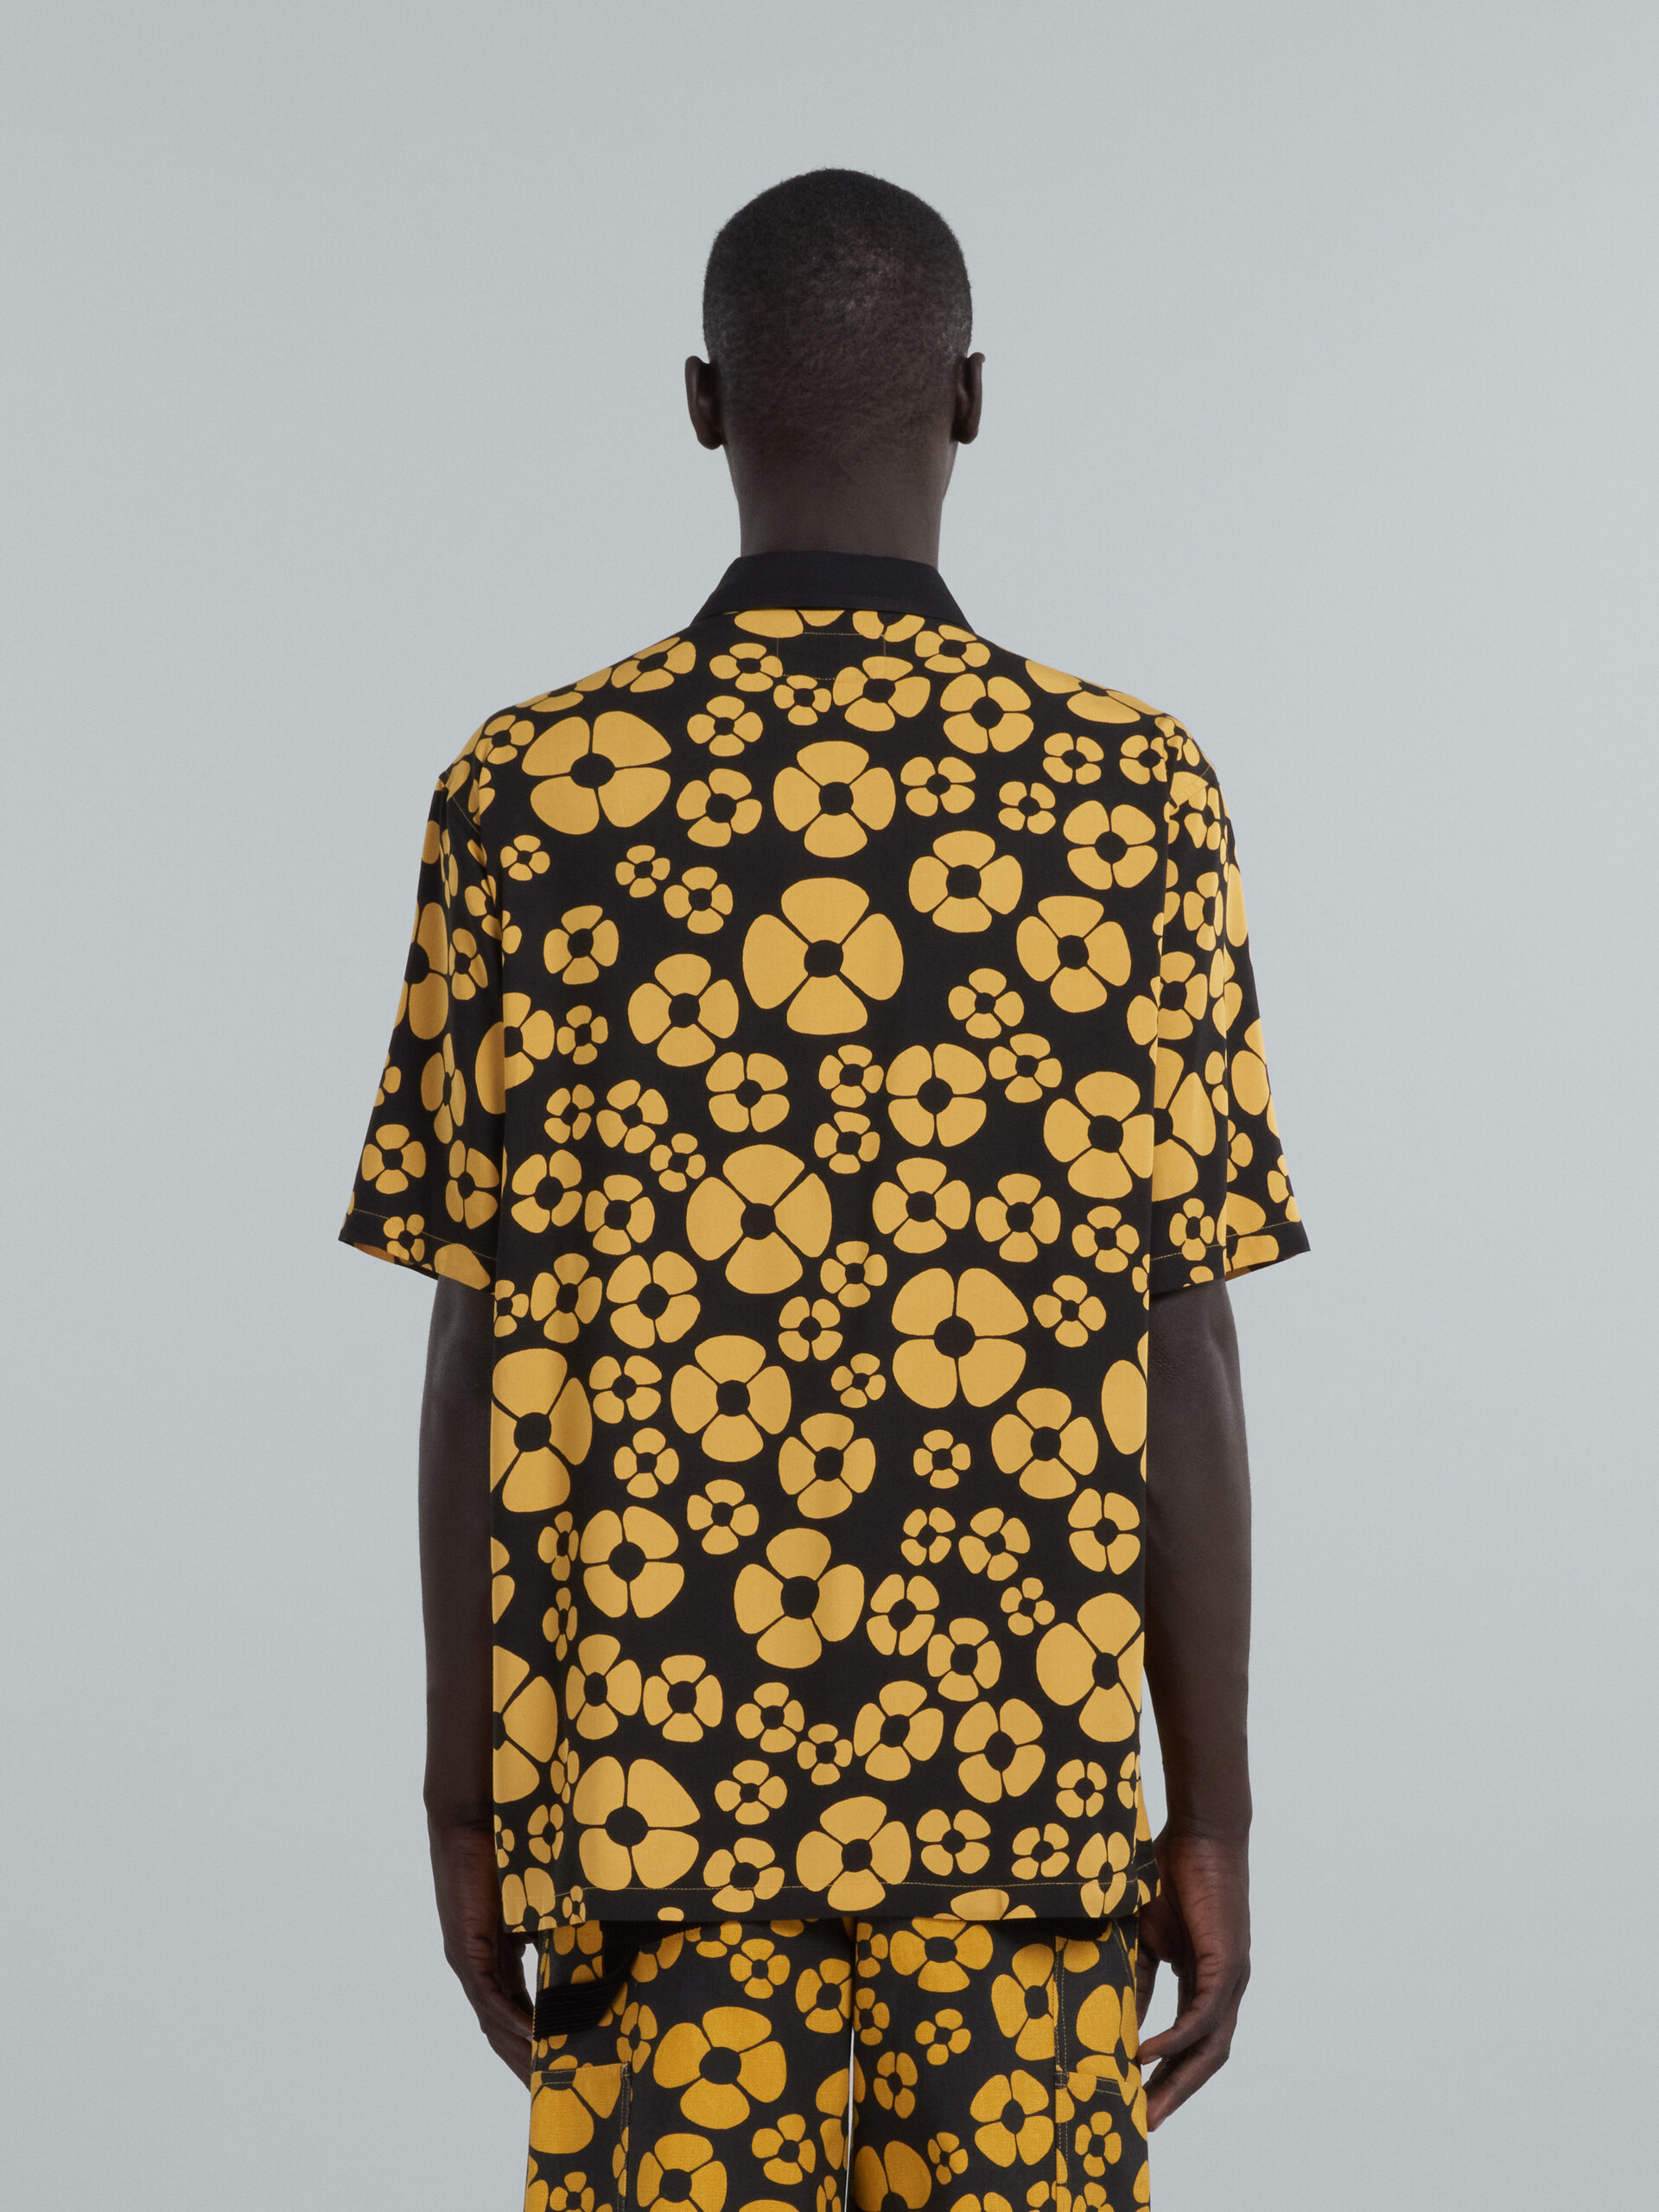 MARNI x CARHARTT WIP - gelbes, kurzärmeliges, geblümtes Shirt - Hemden - Image 3